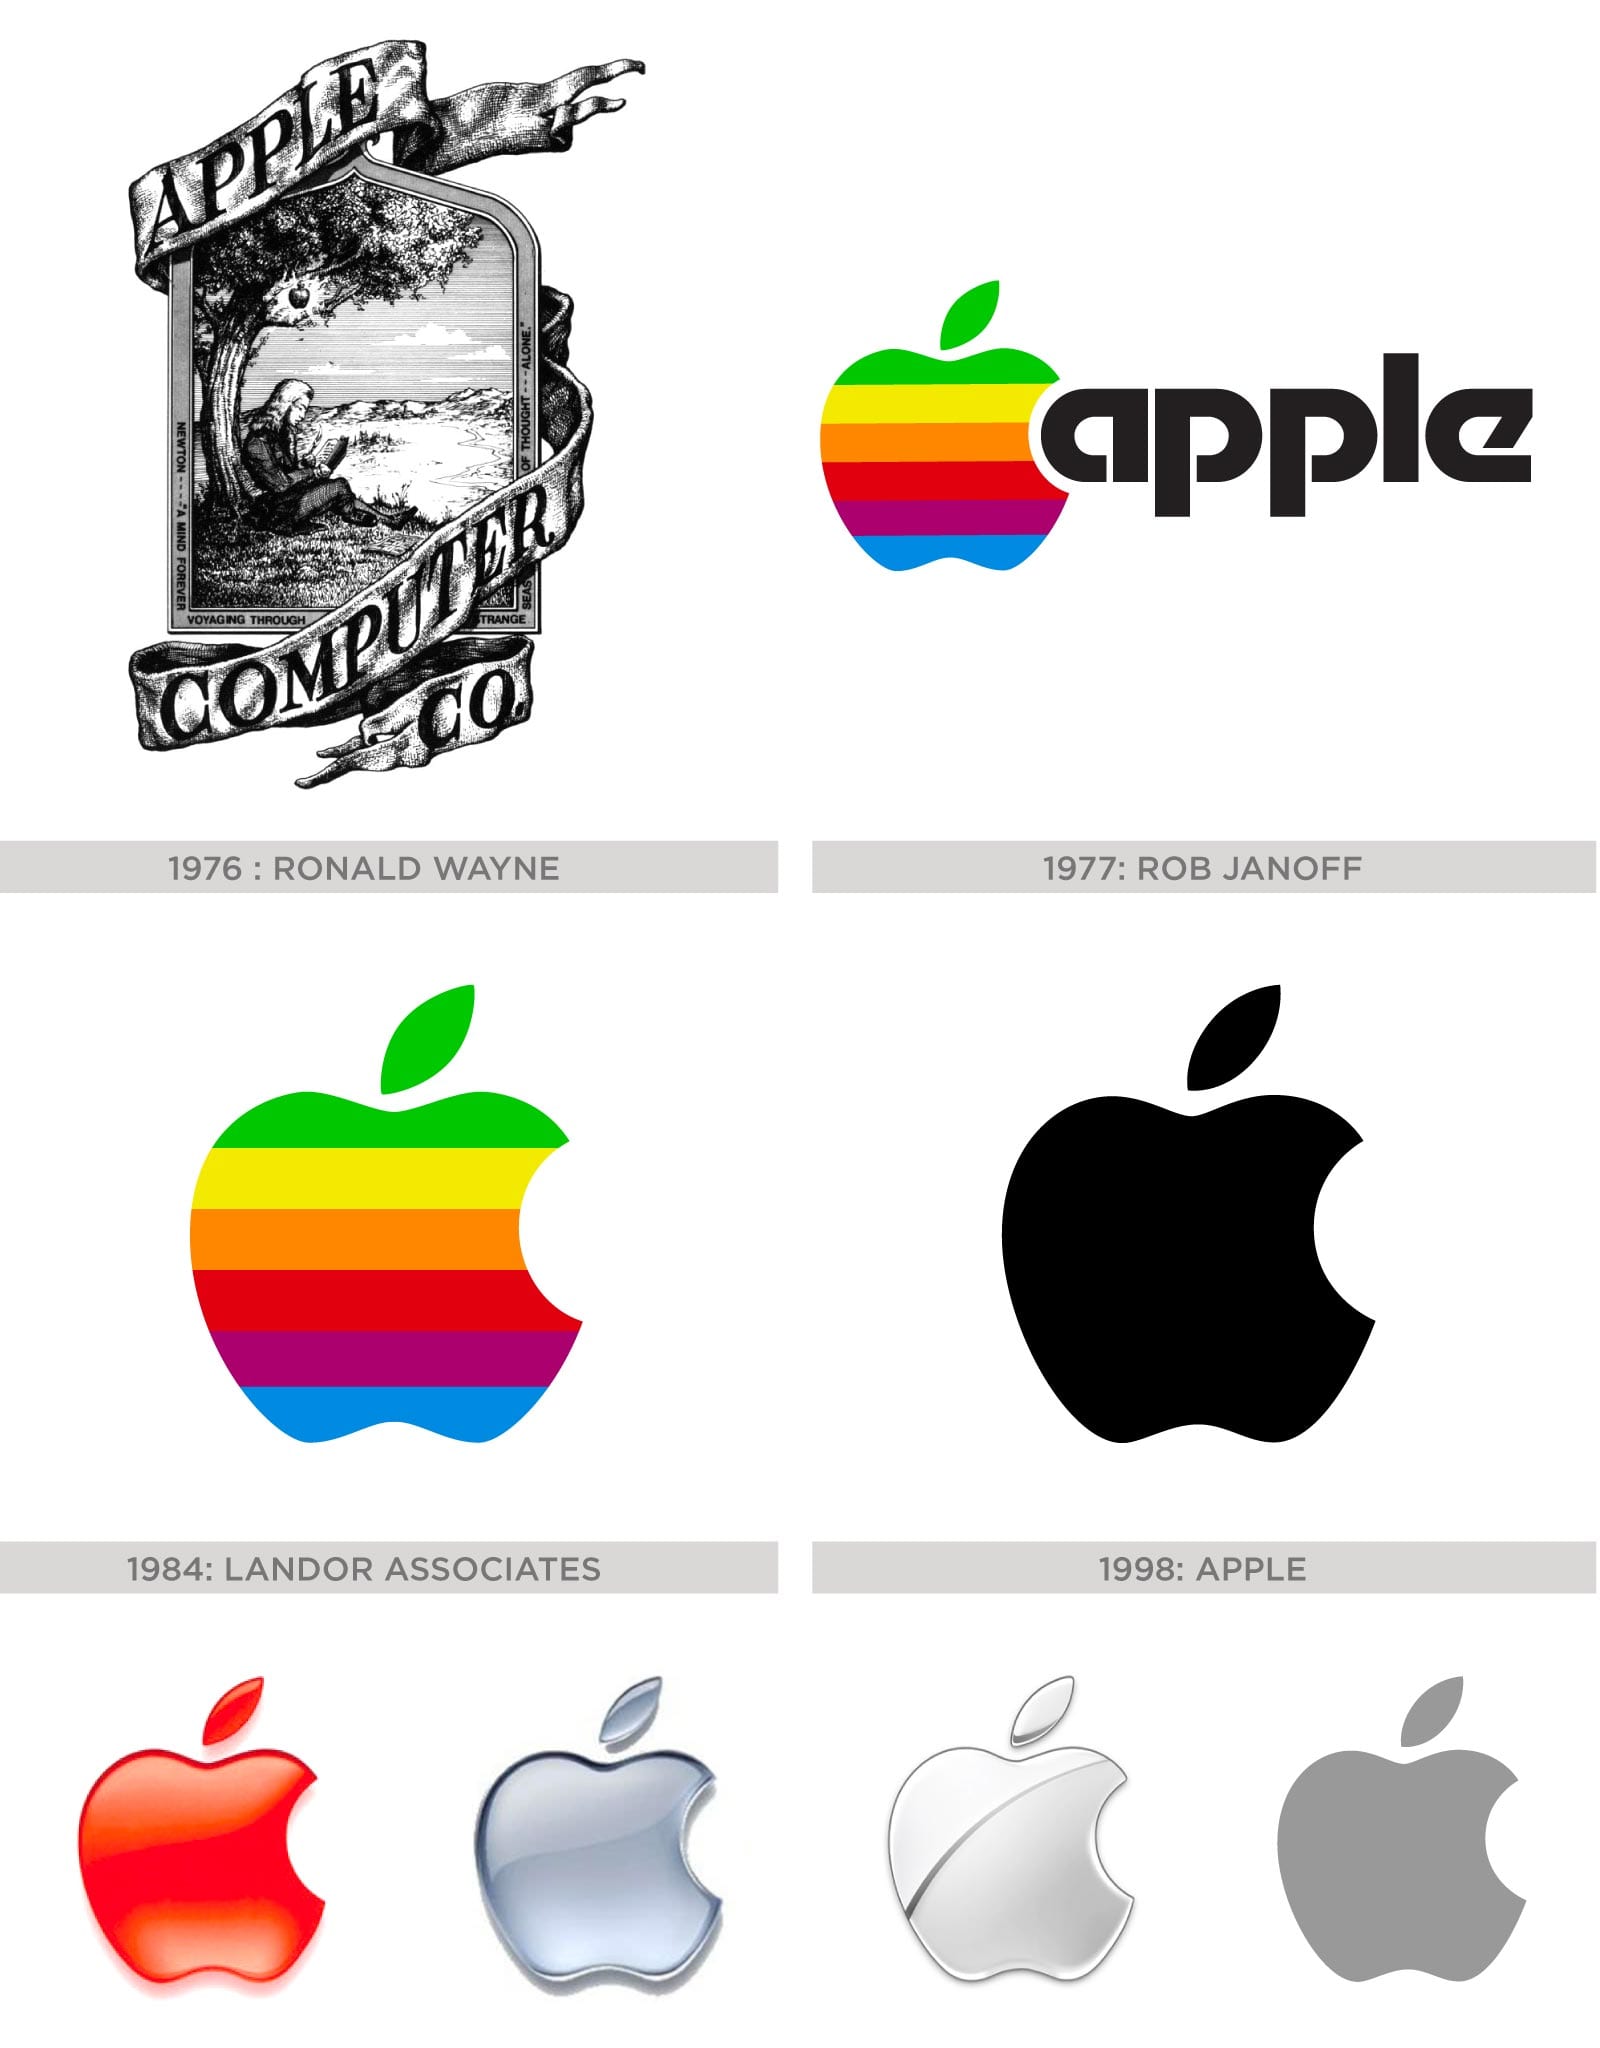 Evolution of Apple's logo